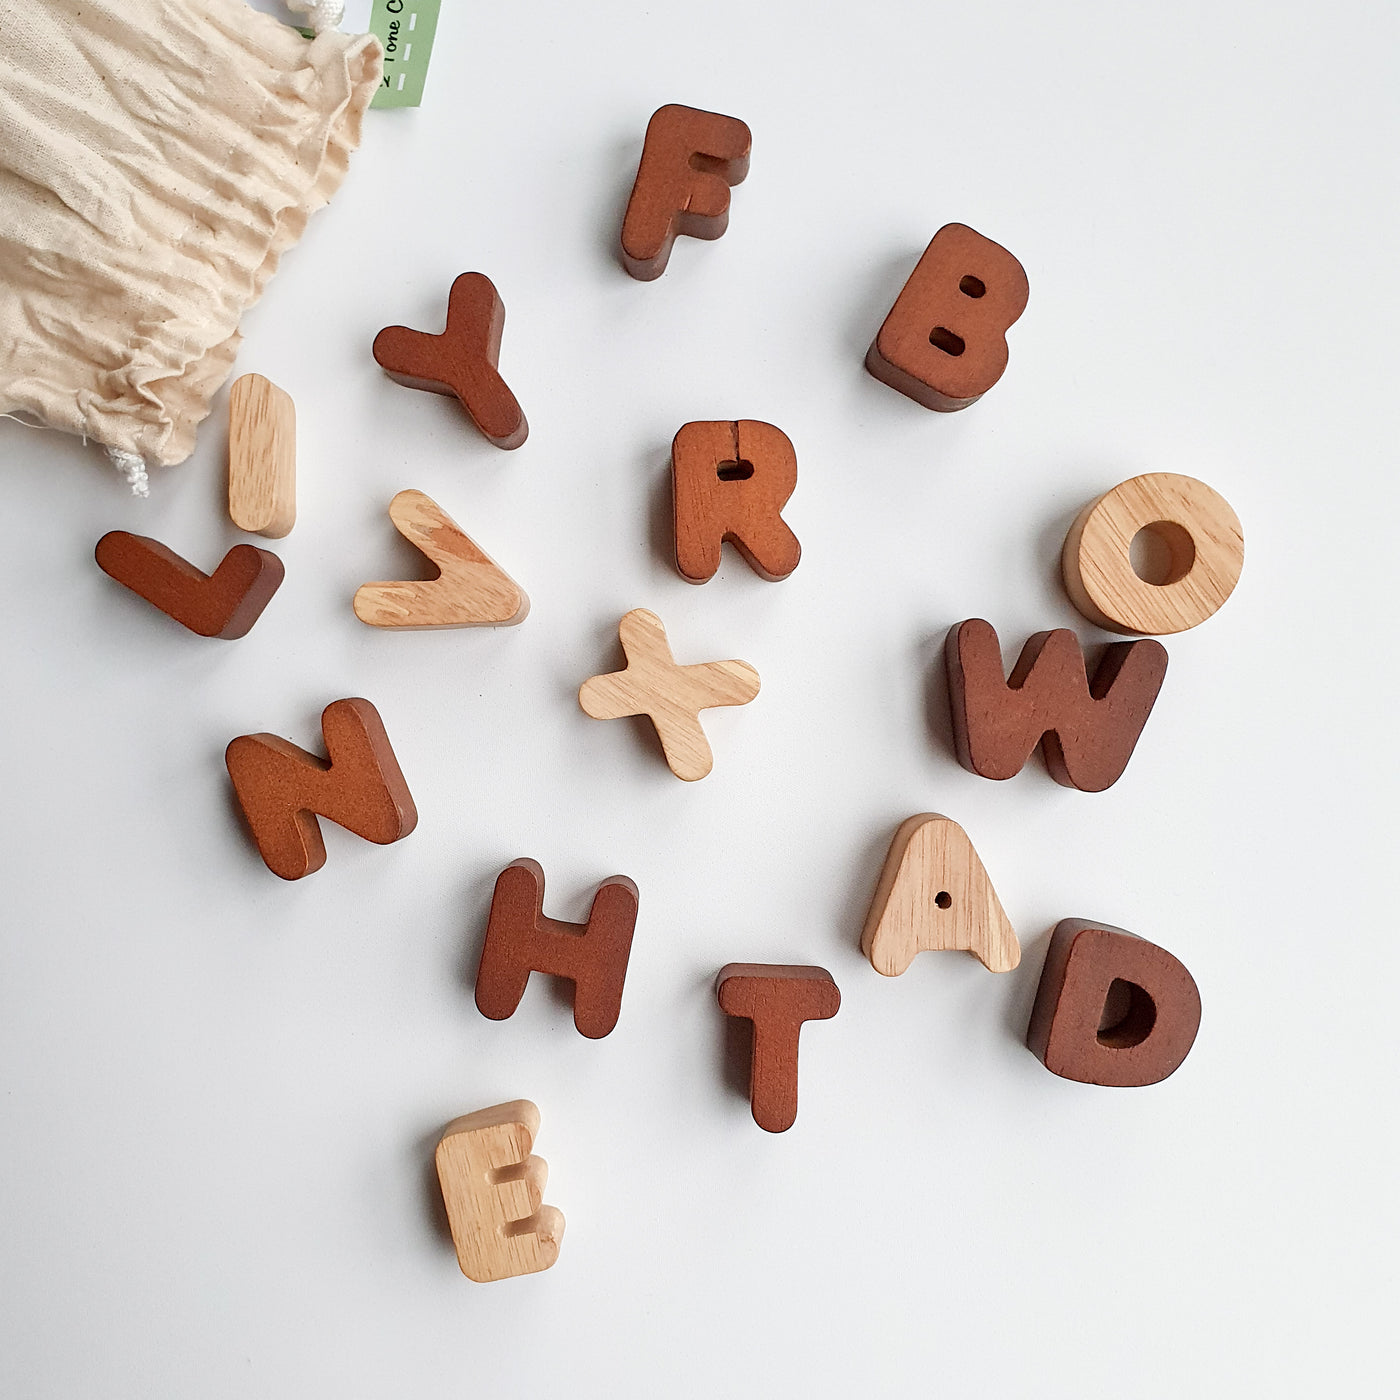 Wooden Alphabet Pieces (capital letters)